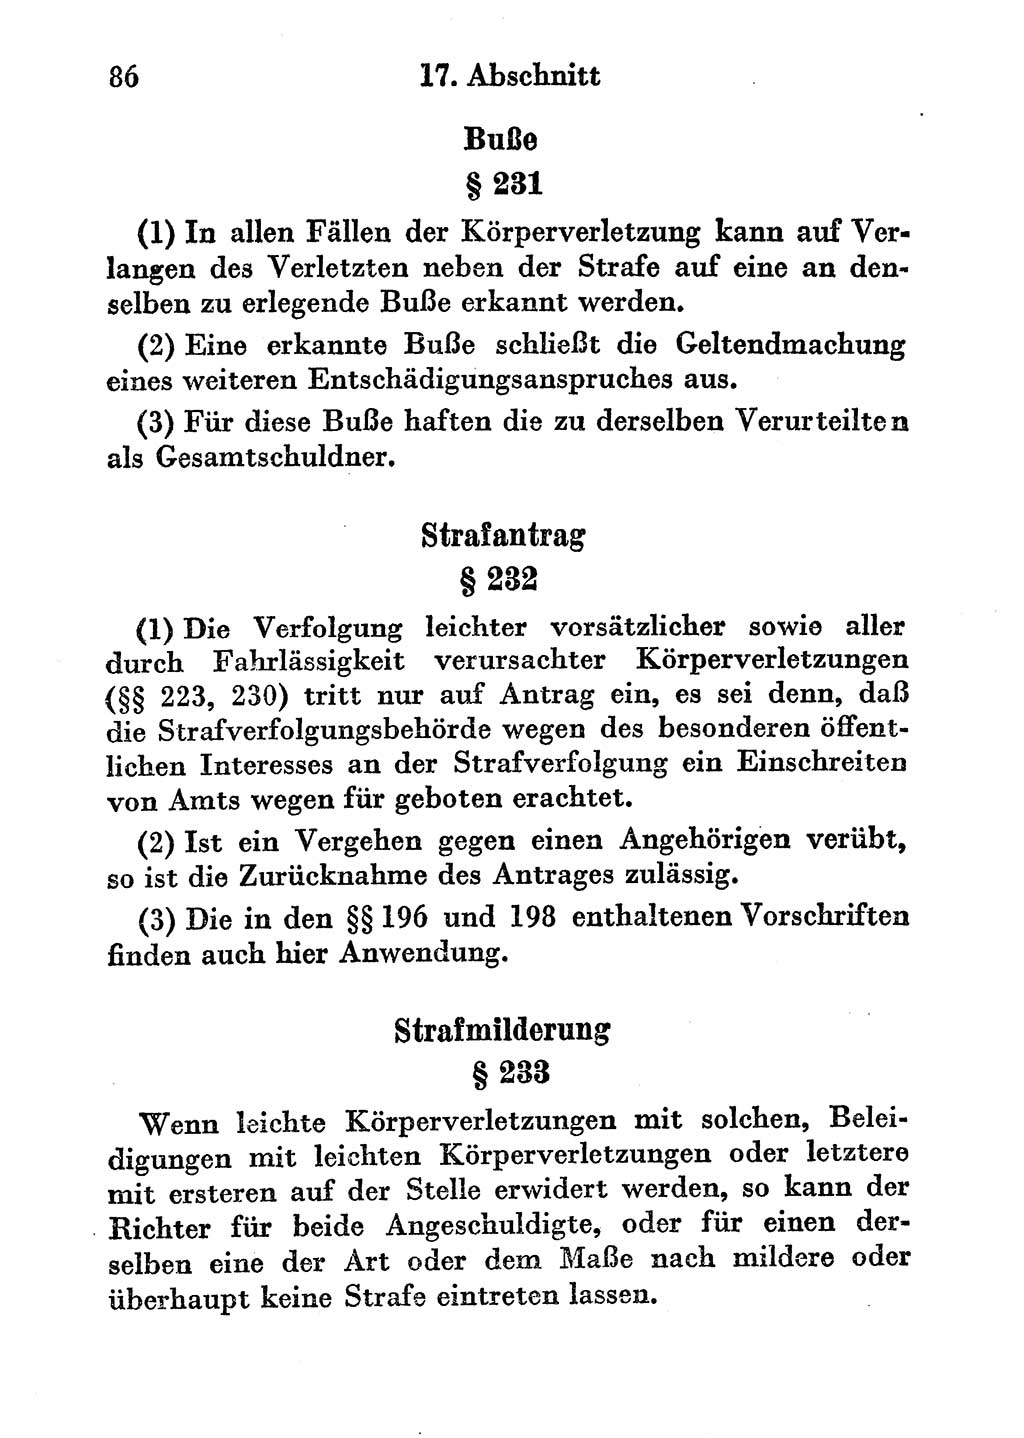 Strafgesetzbuch (StGB) und andere Strafgesetze [Deutsche Demokratische Republik (DDR)] 1956, Seite 86 (StGB Strafges. DDR 1956, S. 86)